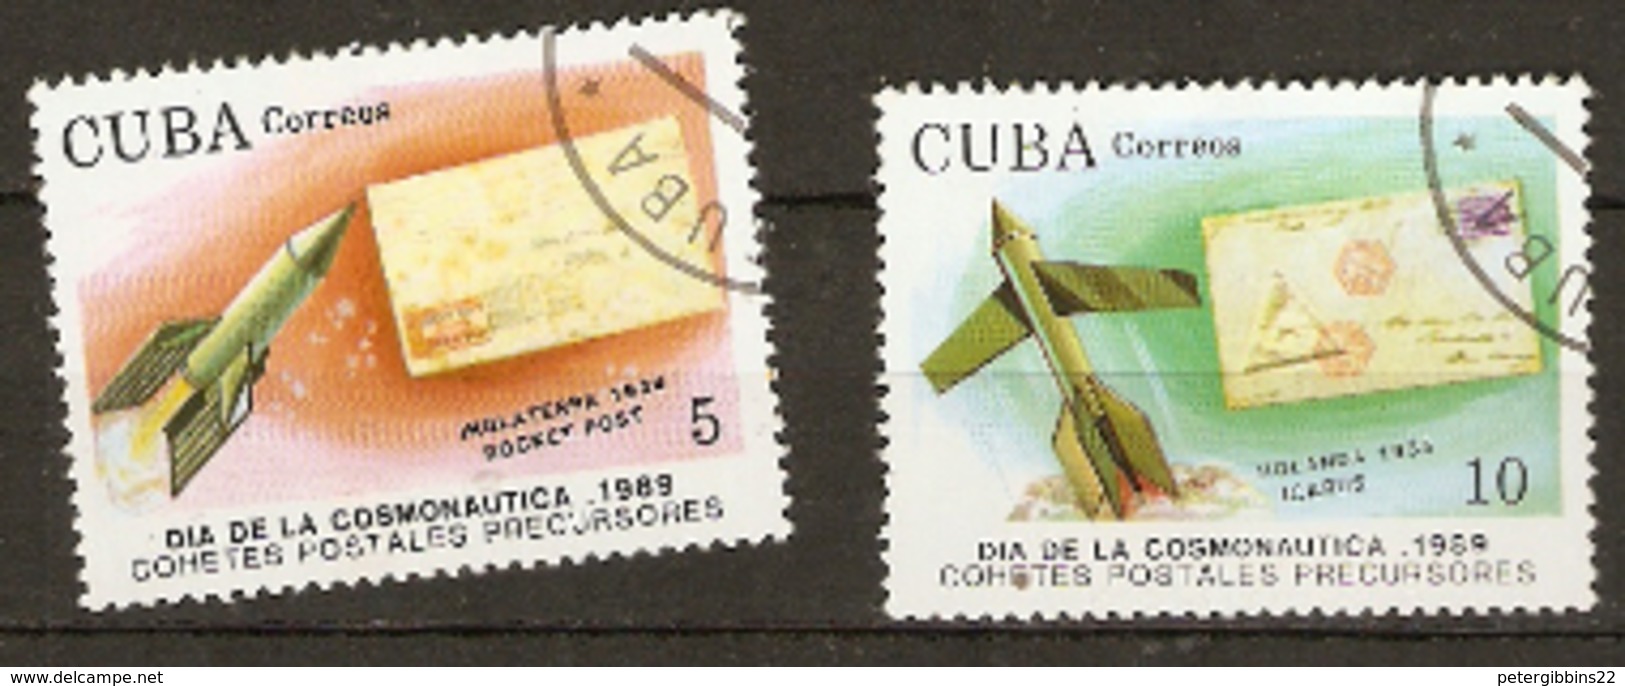 Cuba  1989  SG  3425-5  Cosmonauts Day  Fine Used - América Del Norte